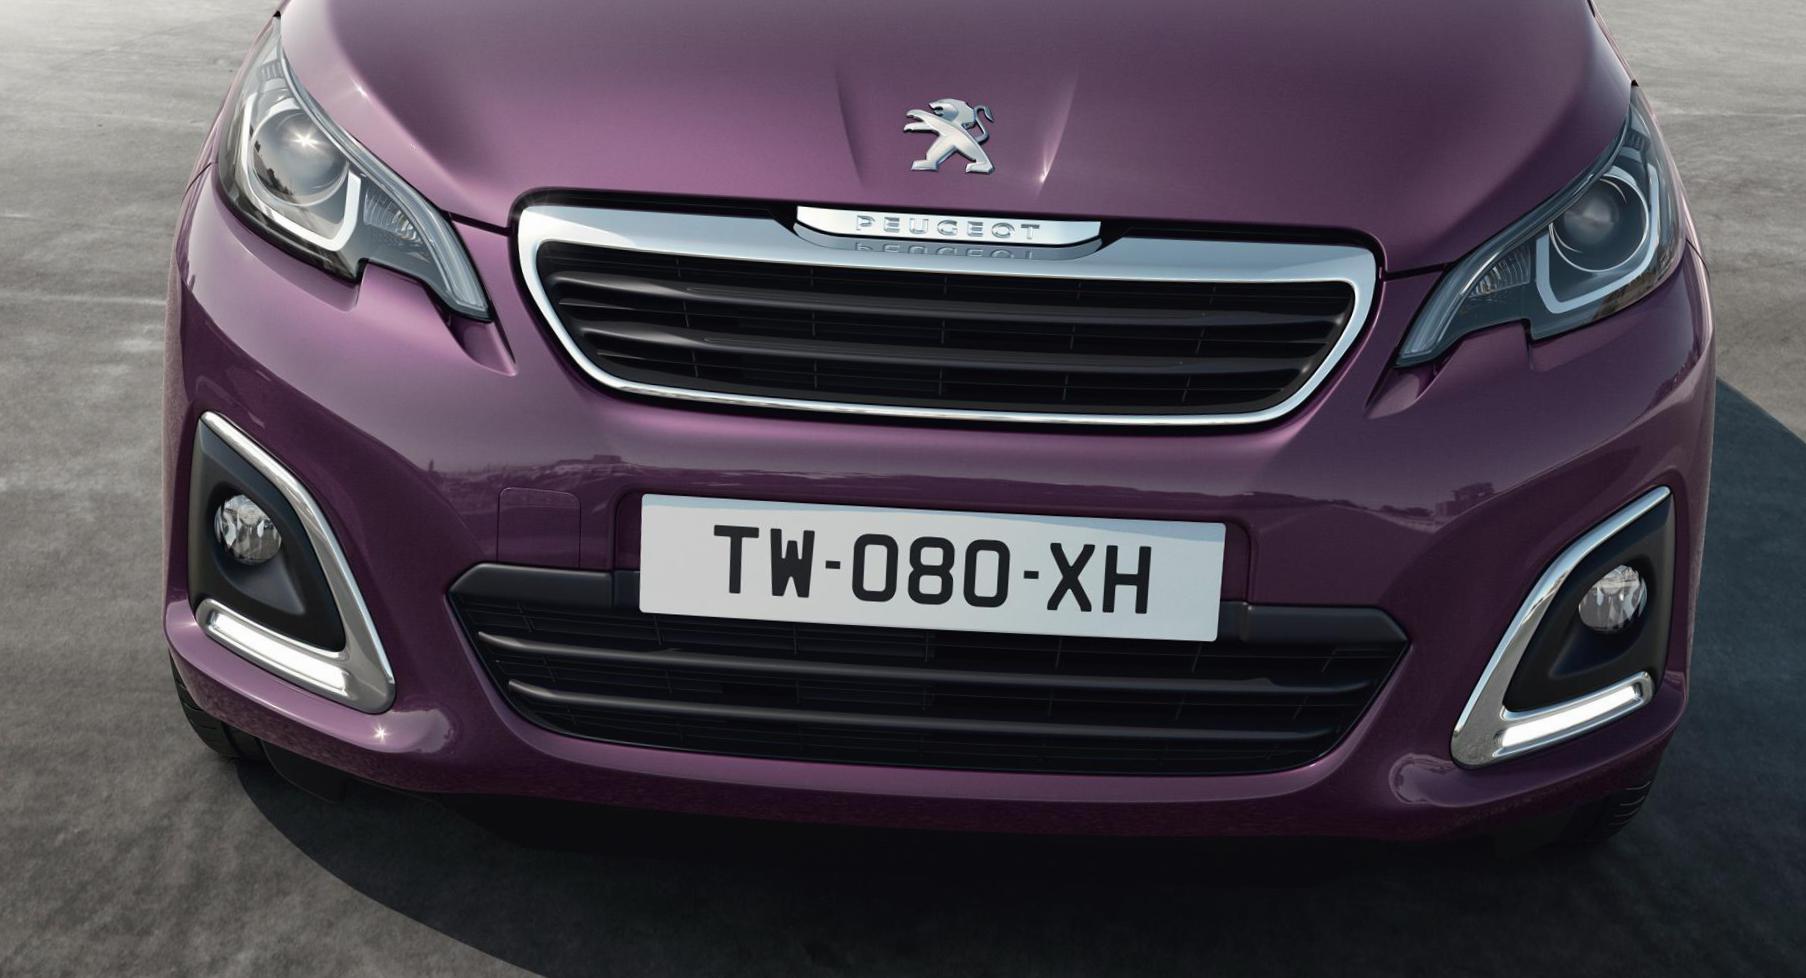 108 5 doors Peugeot new 2014